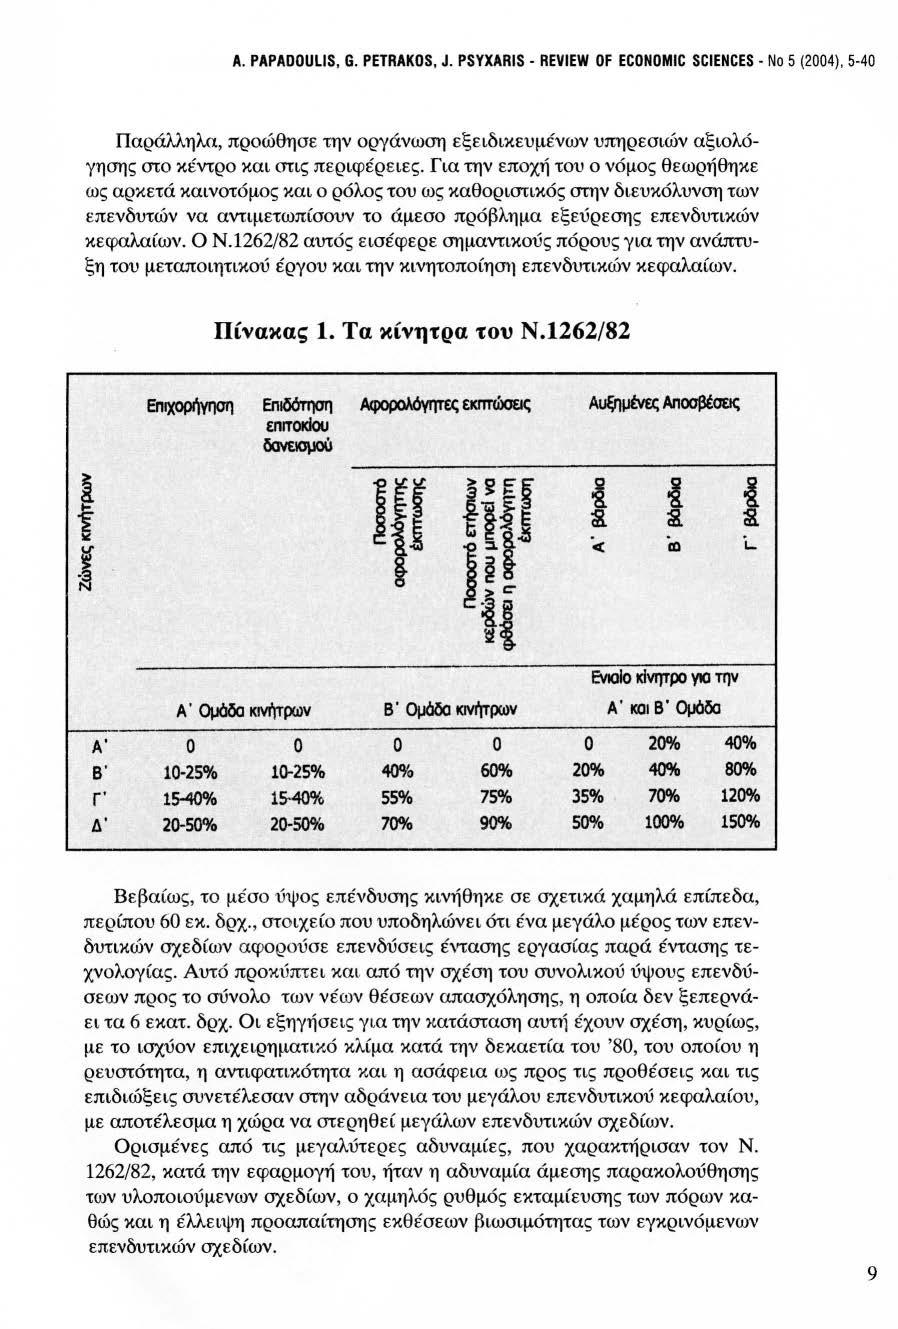 Α. PAPADOULIS, G. PETRAKOS, J. PSYXARIS - REVIEW OF ECONOMIC SCIENCES - Νο 5 (2004), 5-40 Παράλληλα, προώθησε την οργάνωση εξειδικευμένων υπηρεσιών αξιολόγησης στο κέντρο και στις περιφέρειες.